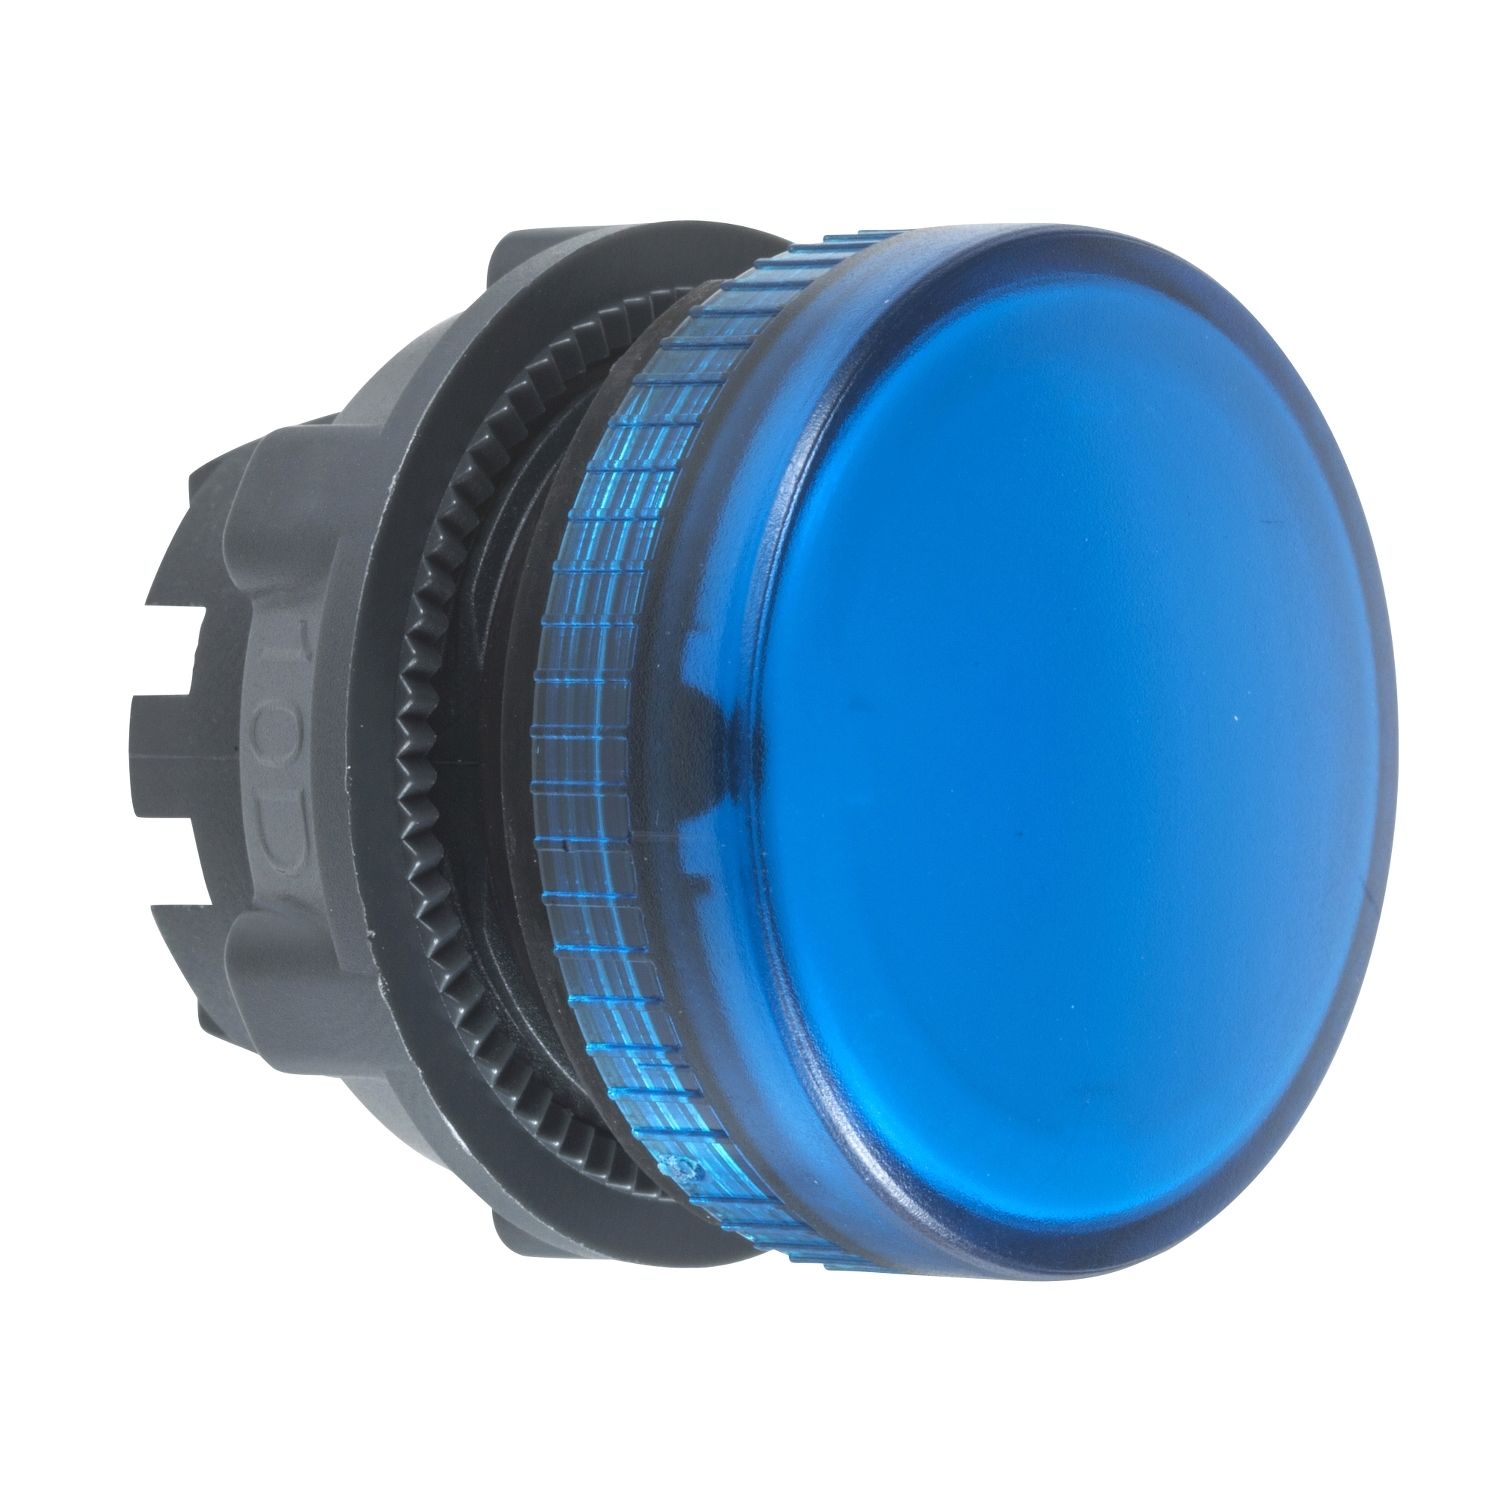 ZB5AV06 blue pilot light head Ø22 plain lens for BA9s bulb